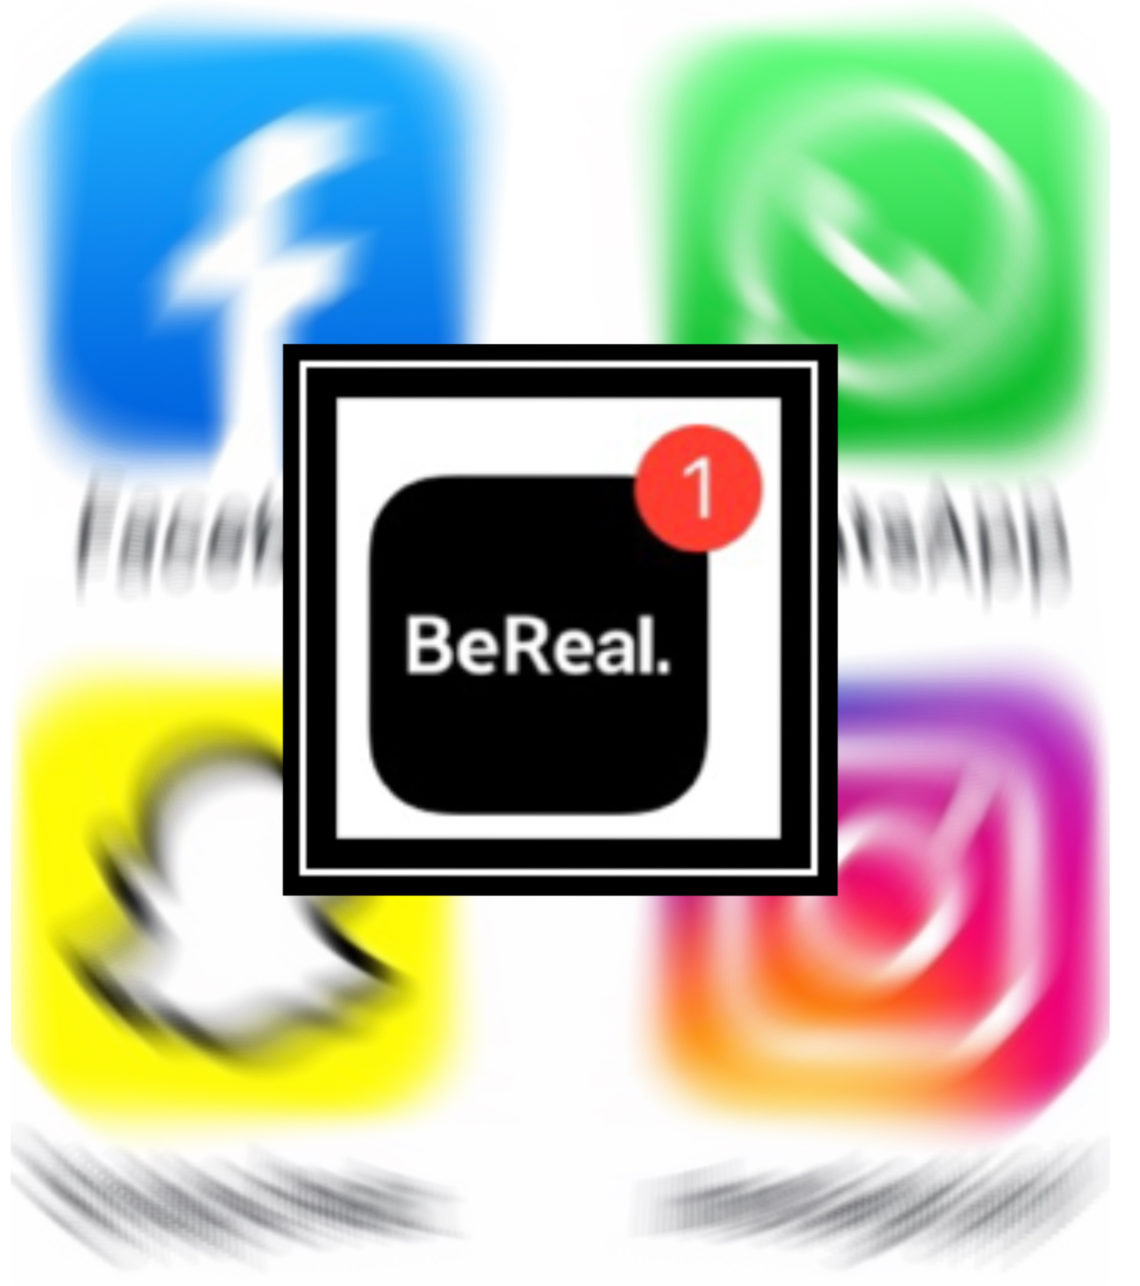 Bereal: ecco come funziona il nuovo social senza filtri